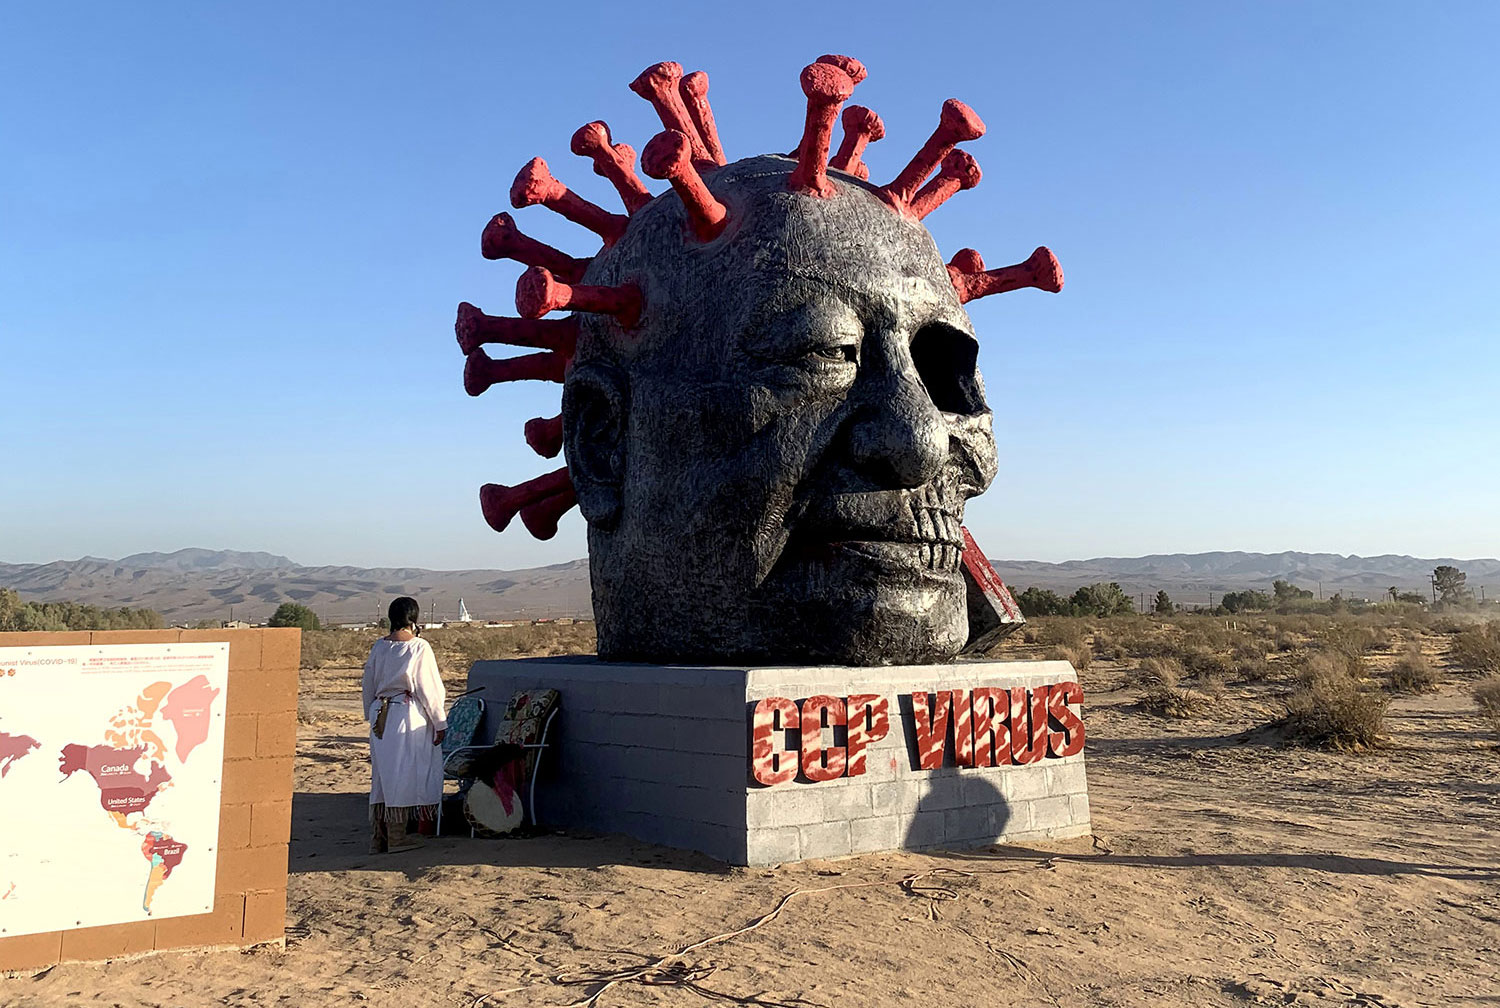 加州自由雕塑公園舉行六四紀念活動 “中共病毒”雕塑落成